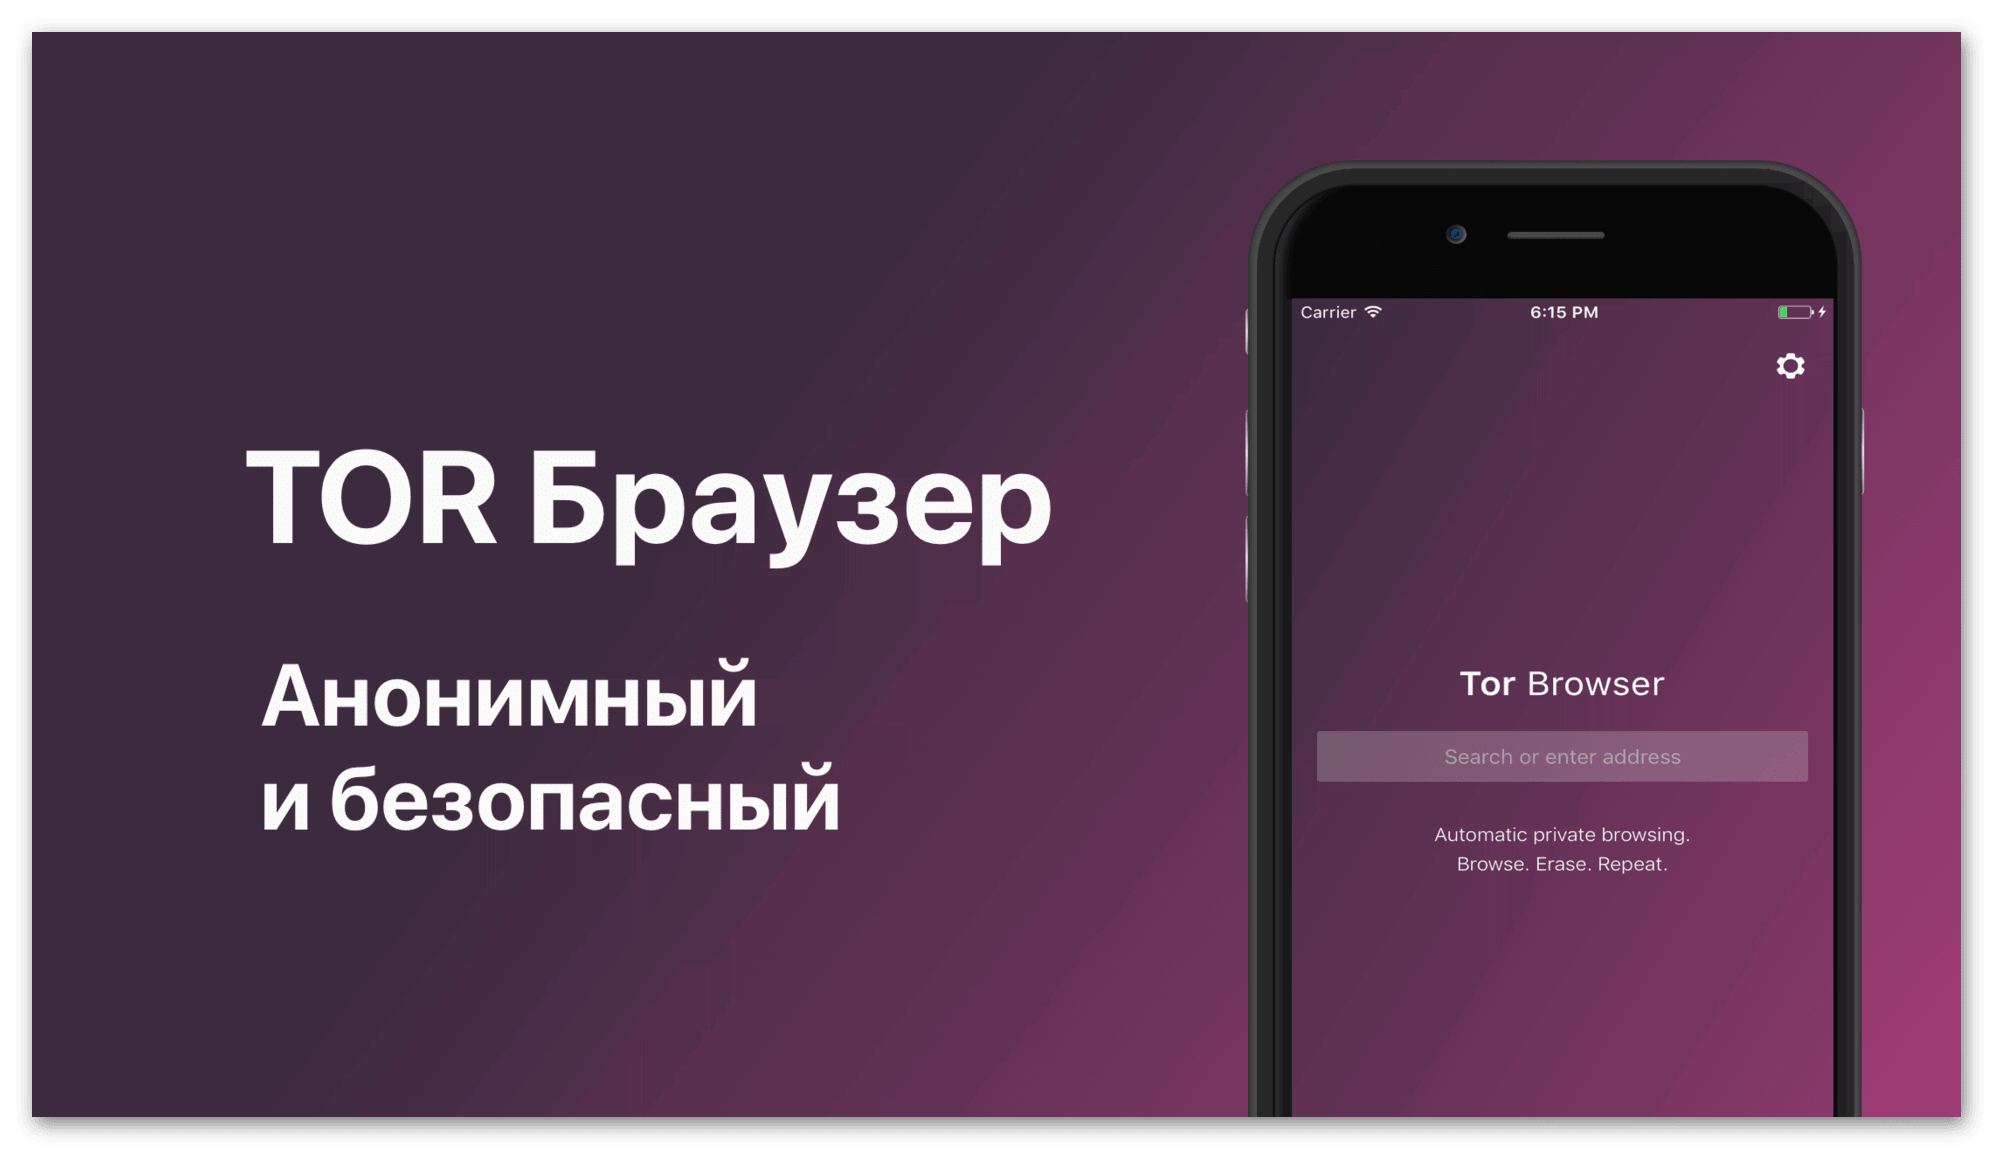 браузер тор скачать на русском бесплатно для айфона 5s mega